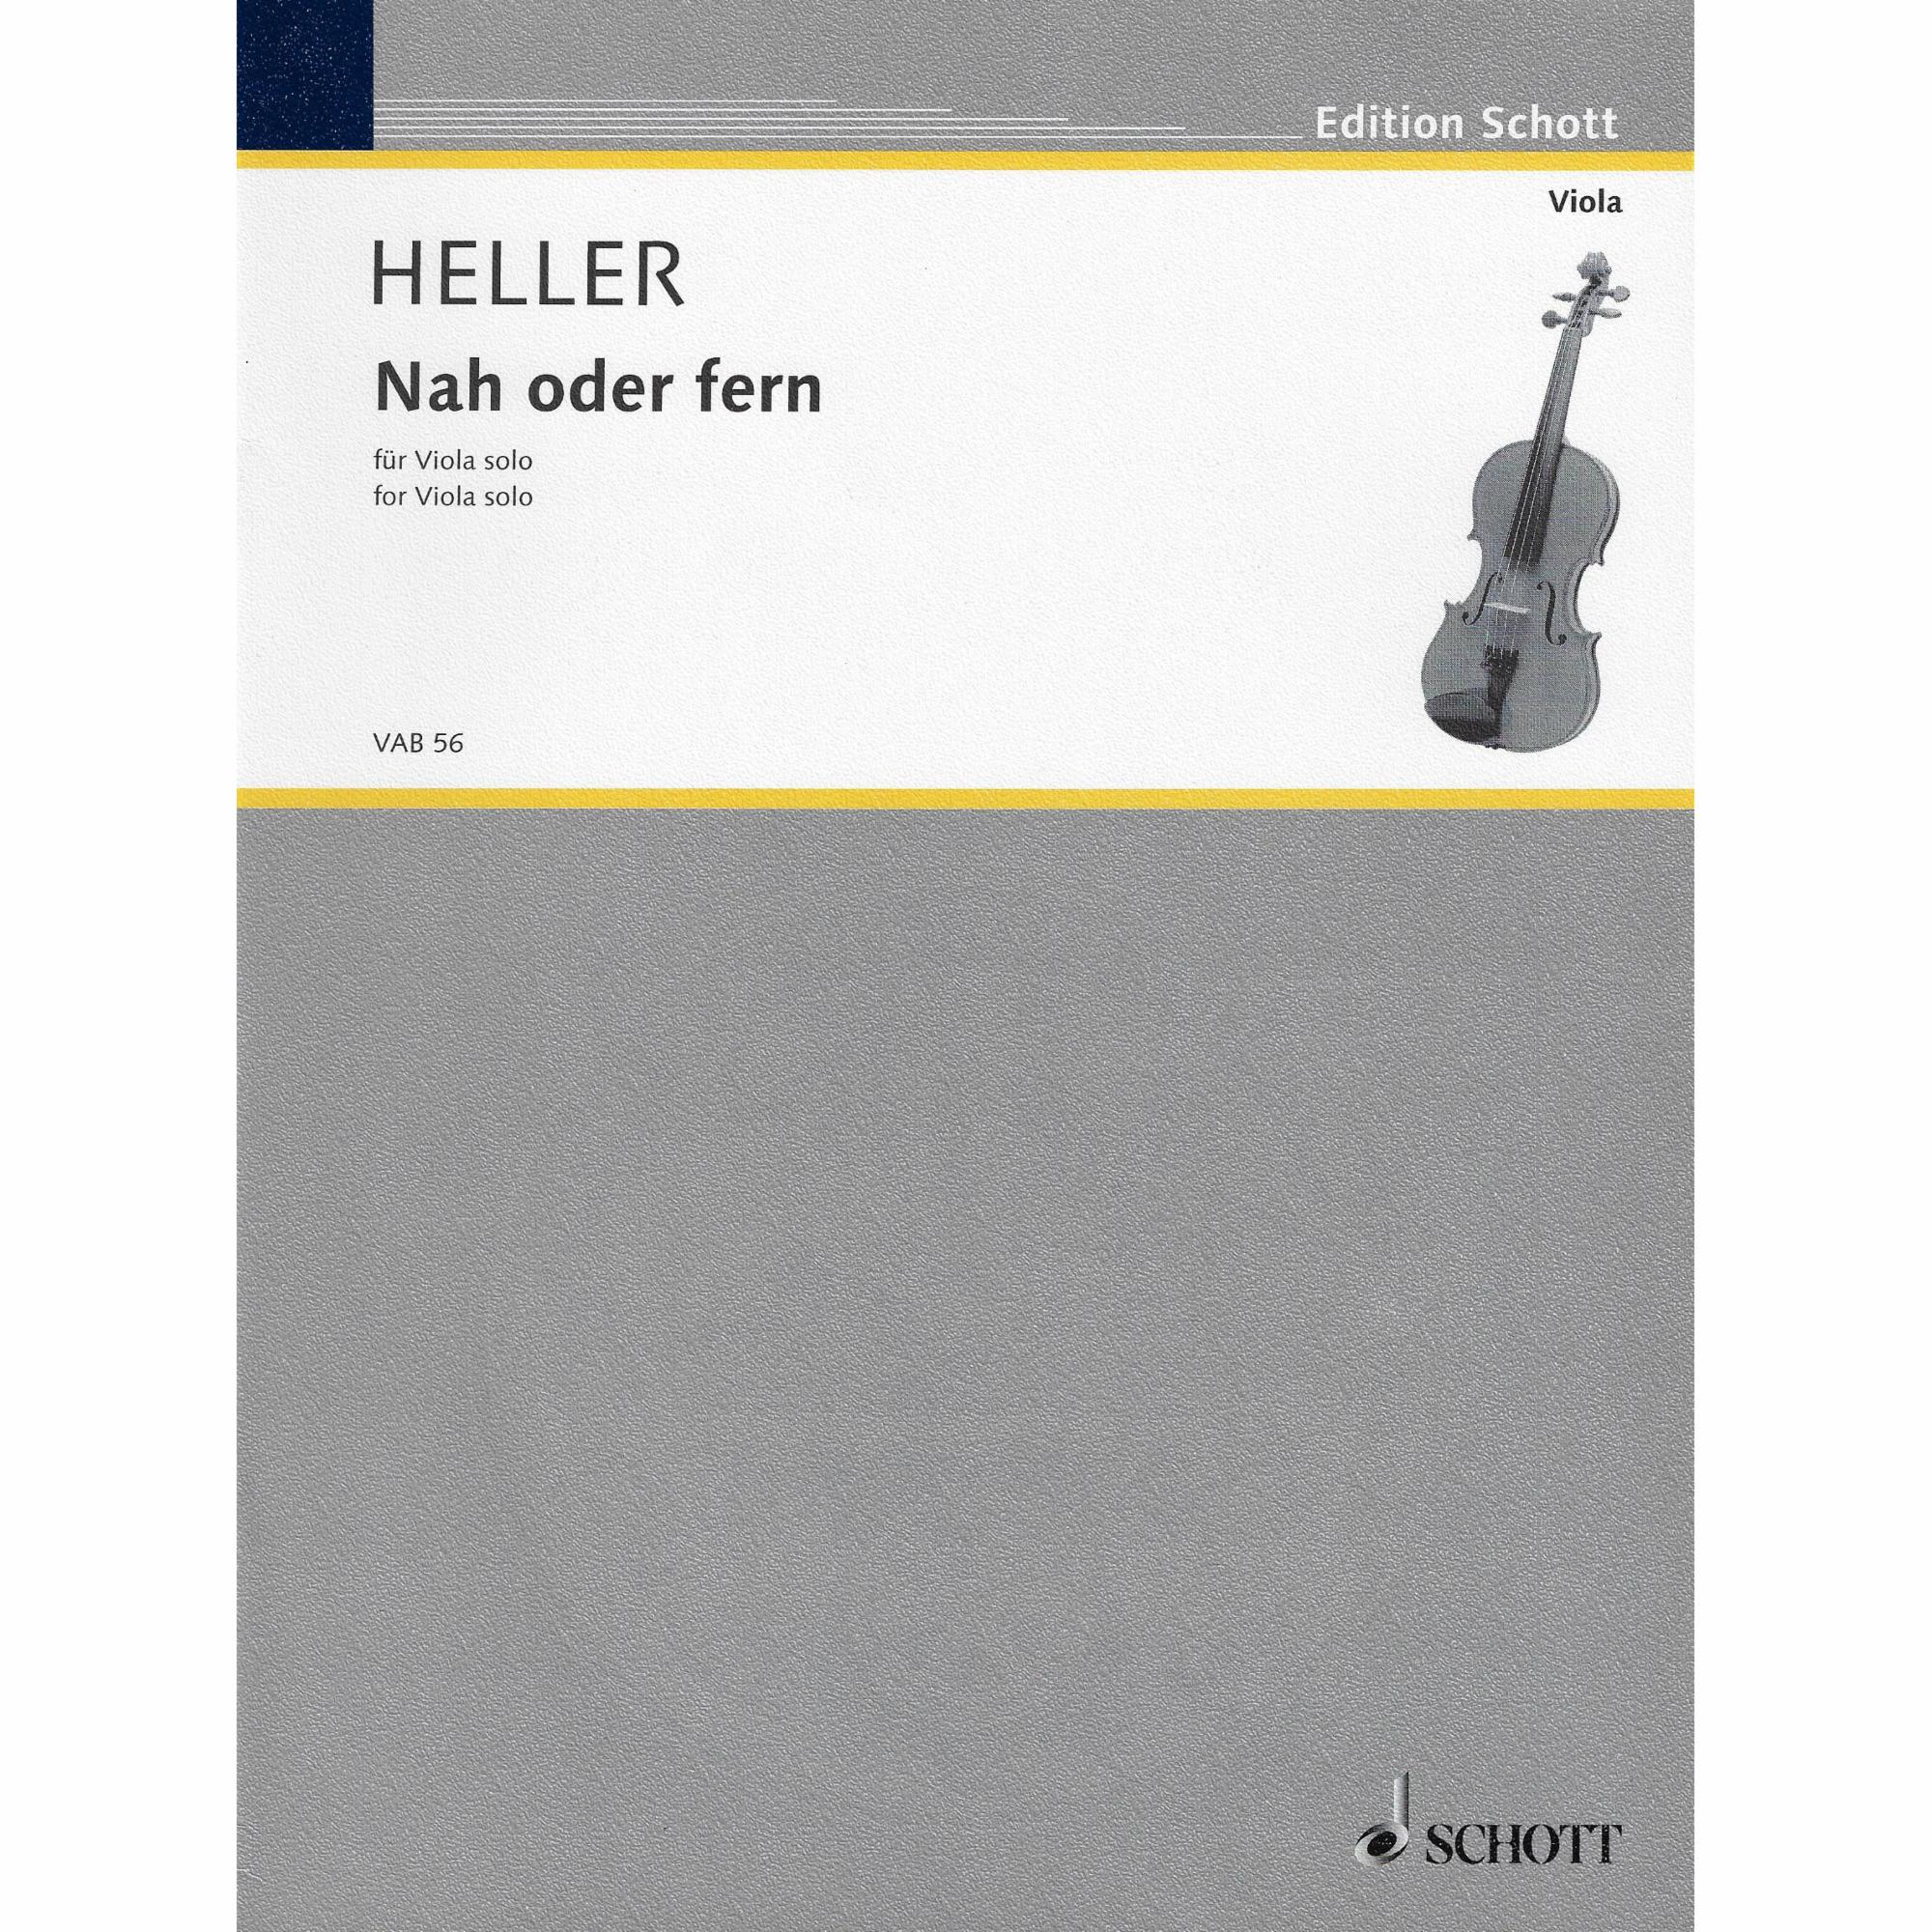 Heller -- Nah oder fern for Solo Viola